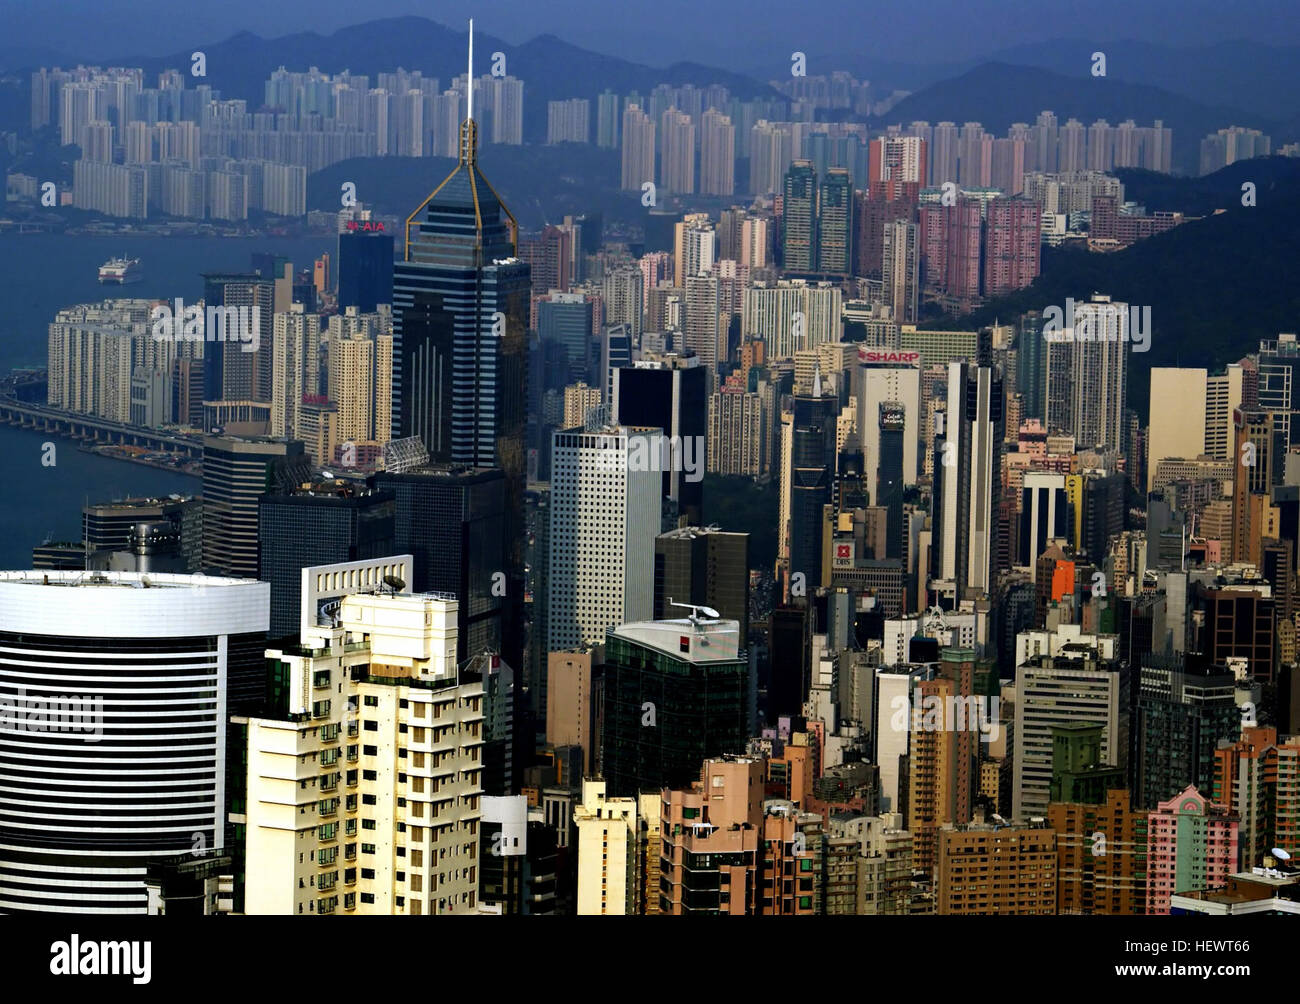 Wenn es nur eine Sache, die Sie tun können, in Hongkong gibt, gehen Sie zu The Peak. Haben Sie viele Dinge zu tun, noch gehen Sie zu The Peak. Der höchste Punkt auf Hong Kong Island, dies exklusivsten Viertel der Stadt wurde seit den kolonialen Zeiten – damals war es die kühlere Luft, die die reichen und berühmten angezogen; in der Post-Klimaanlage-Ära halten sie den Blick auf eine der spektakulärsten Städte der Welt kommen. Stockfoto